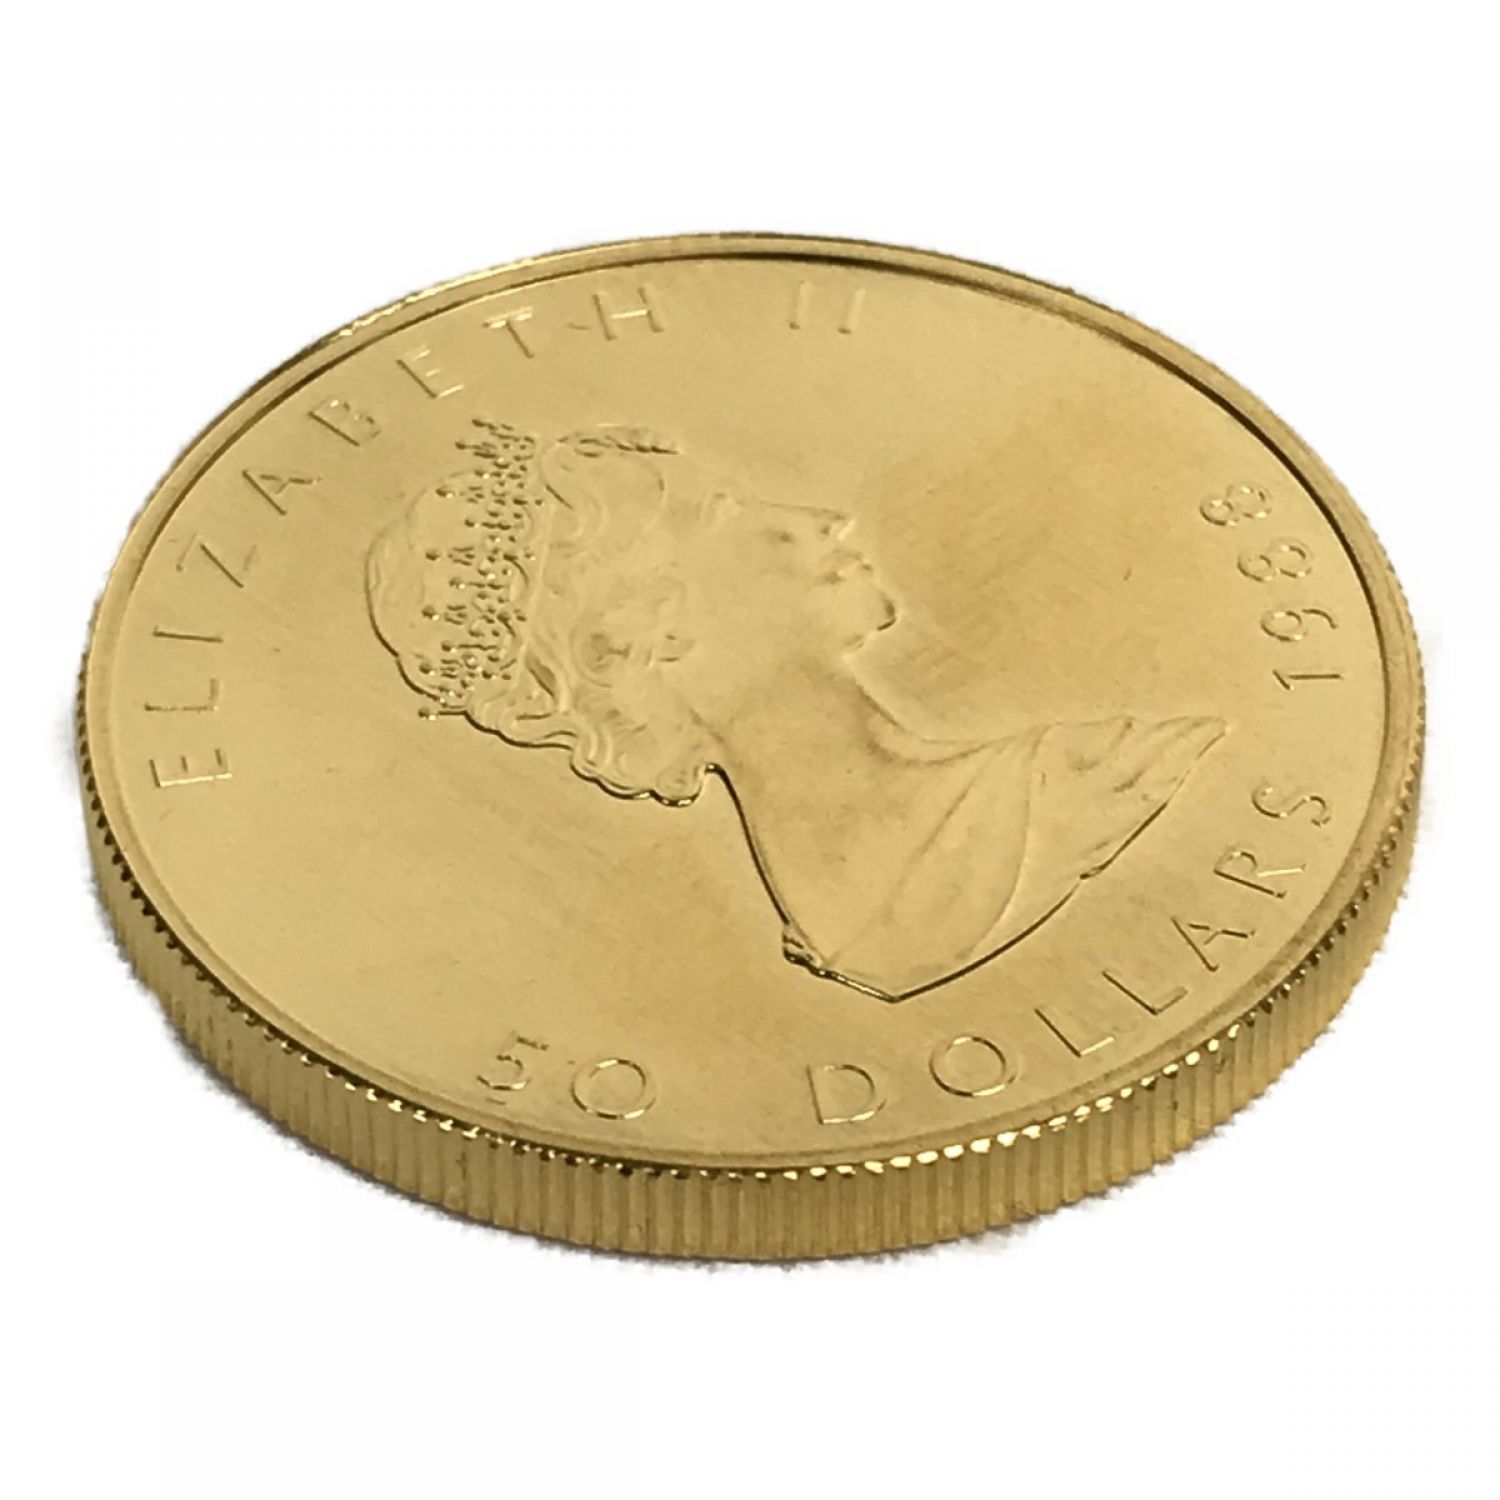 ■■金貨 メイプルリーフ金貨 エリザベス カナダ 1989年 50ドル 1oz 31.1g 純金 K24 コイン 9999